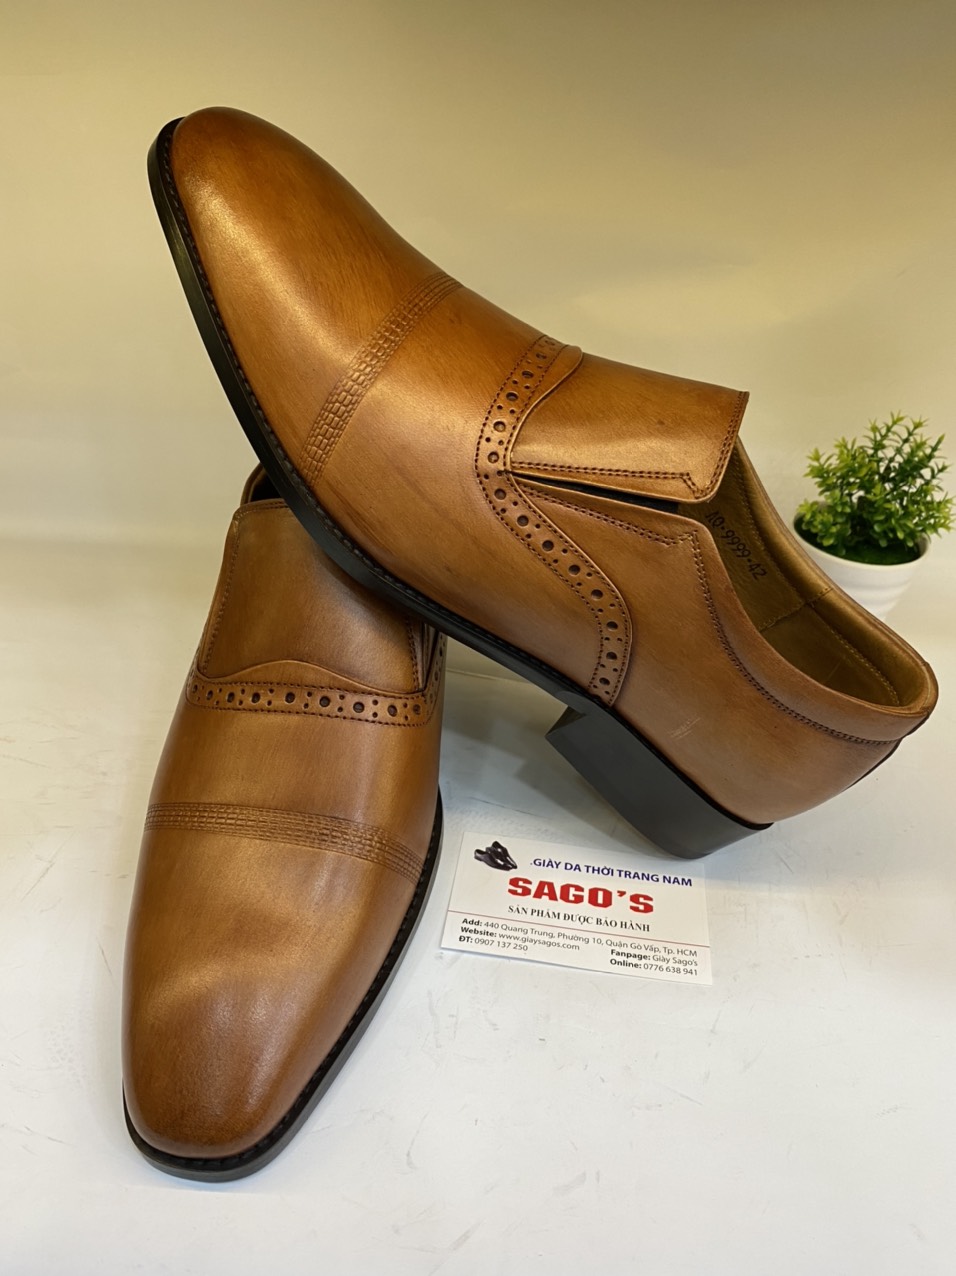 Giày Công Sở Nam Da Bò Màu Nâu-P35 Giày Tây Nam- Giày Đánh Patina Thủ Công Sang Trọng Lịch Lãm Giày SAGO’S